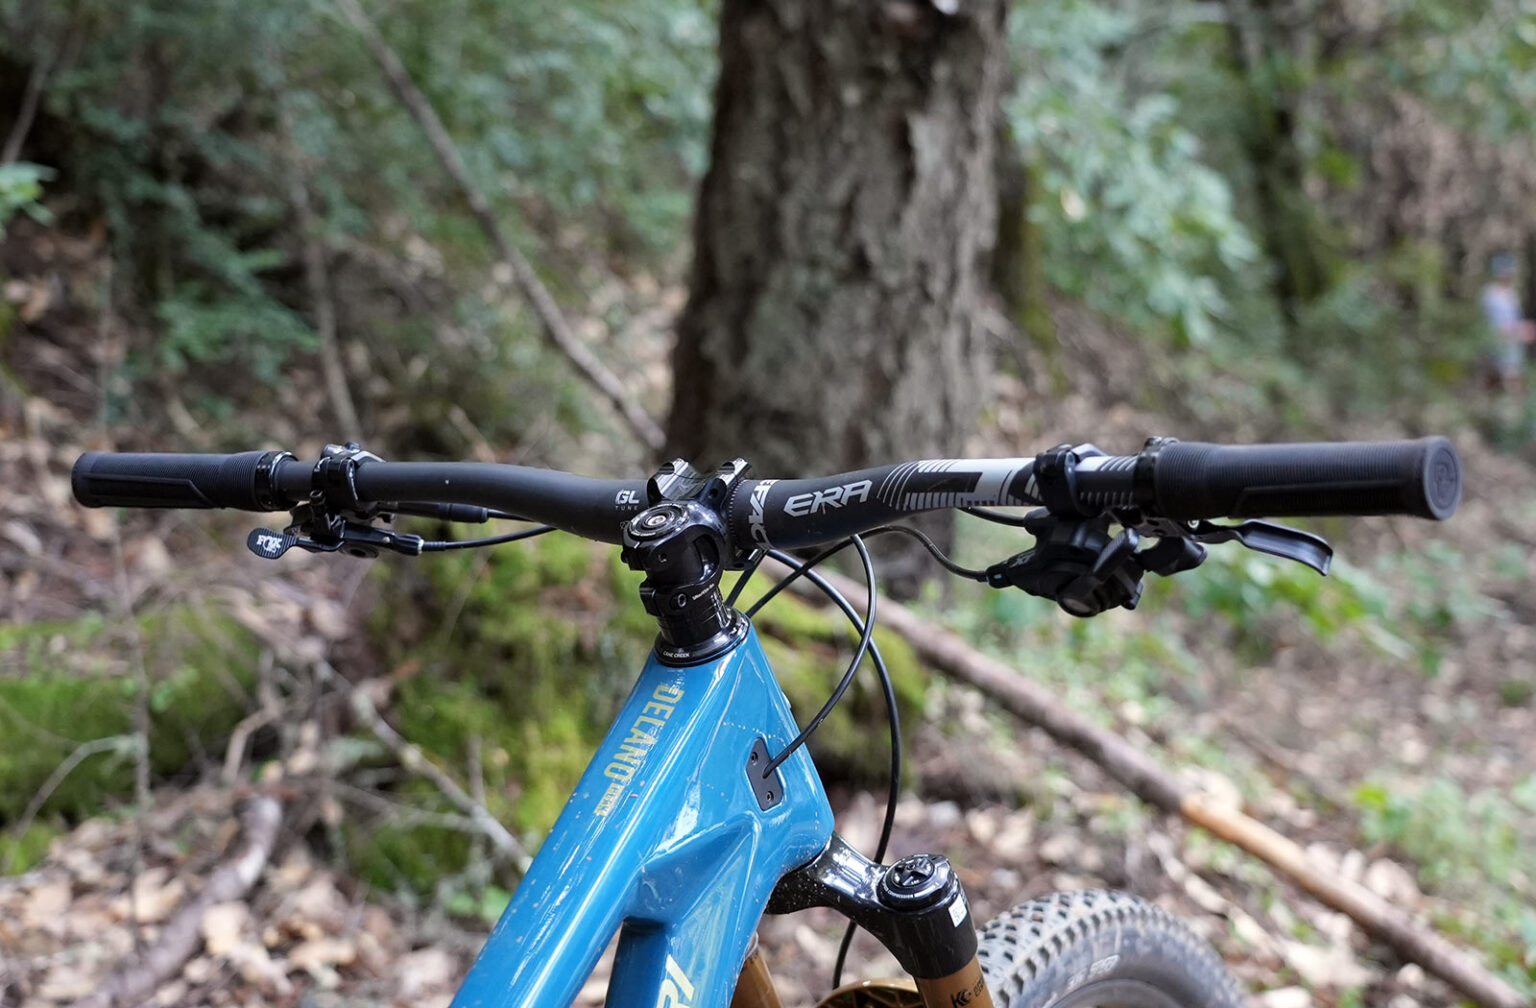 2025 race face era carbon mountain bike handlebar shown on a bike